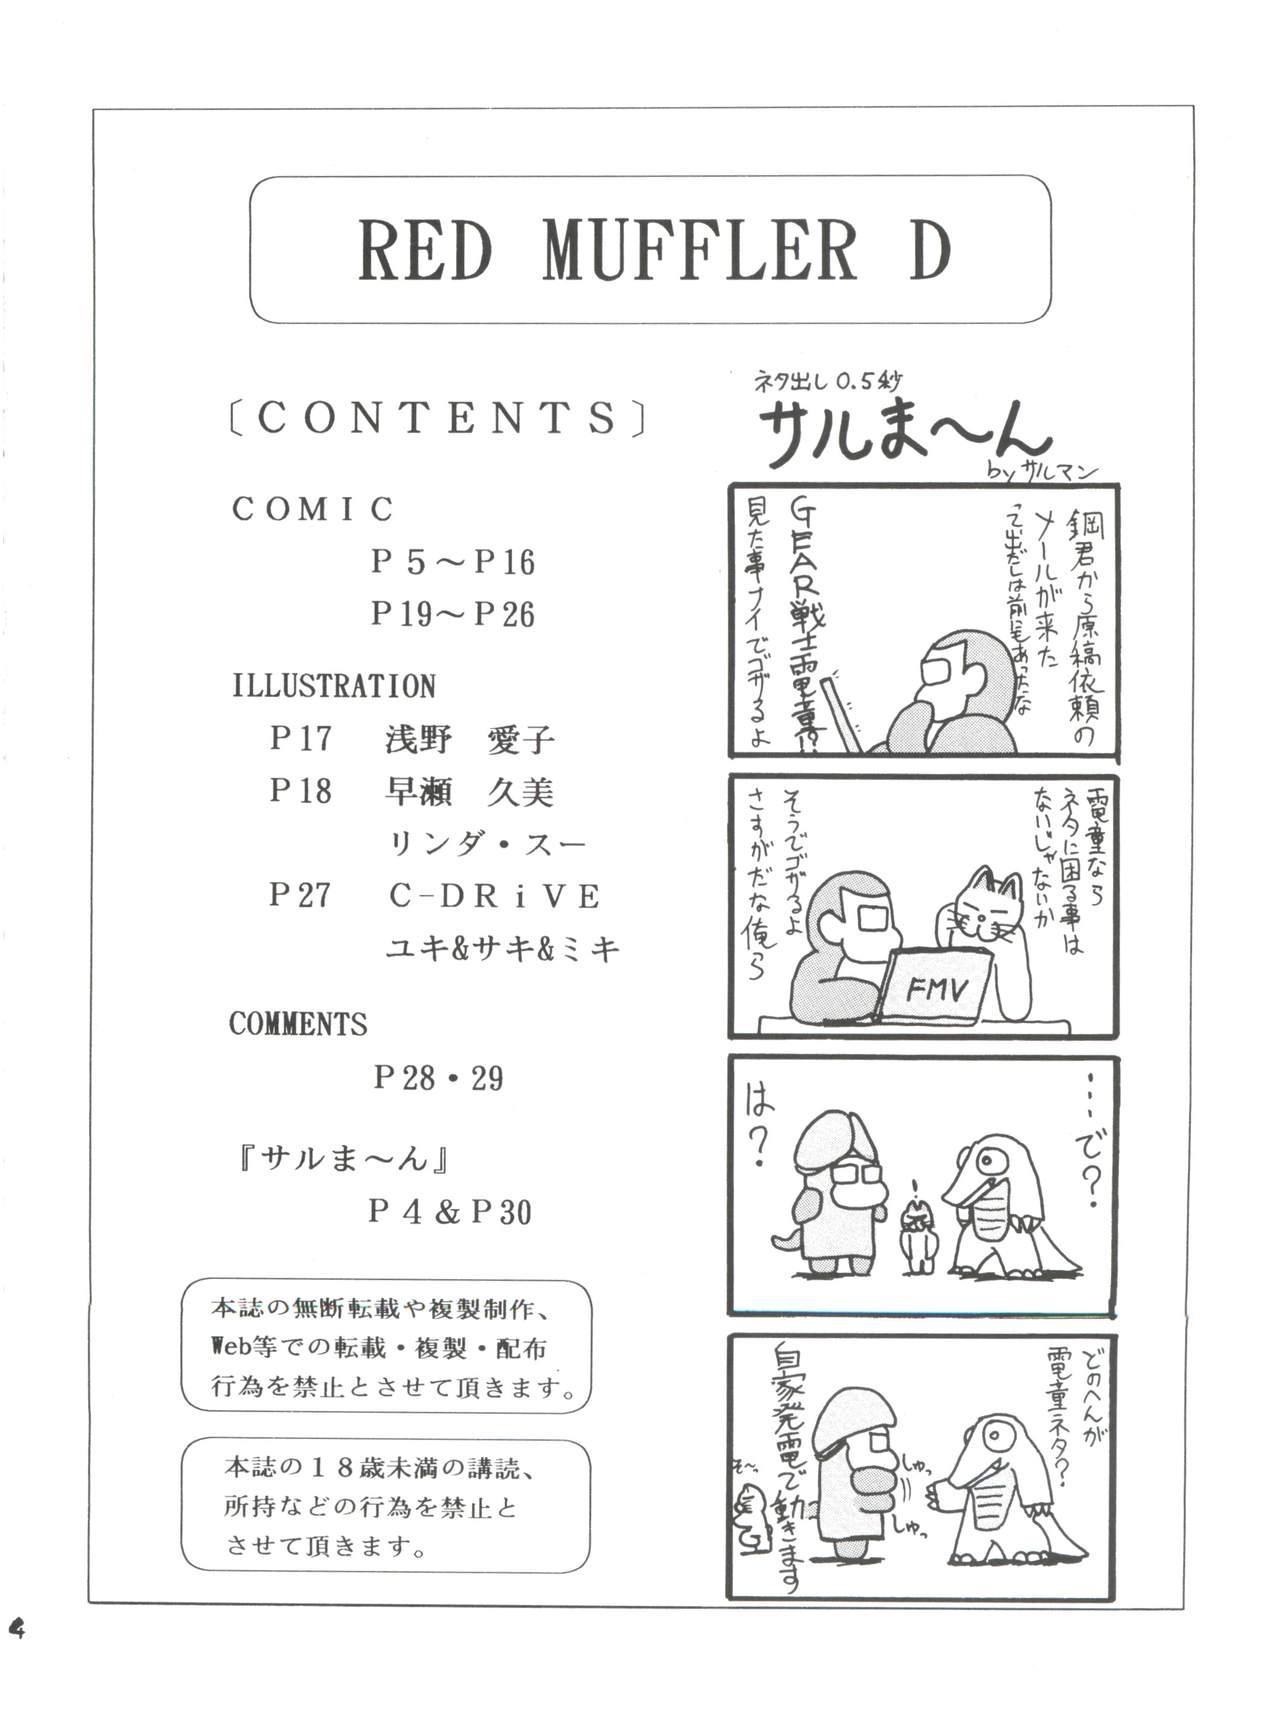 RED MUFFLER D 2